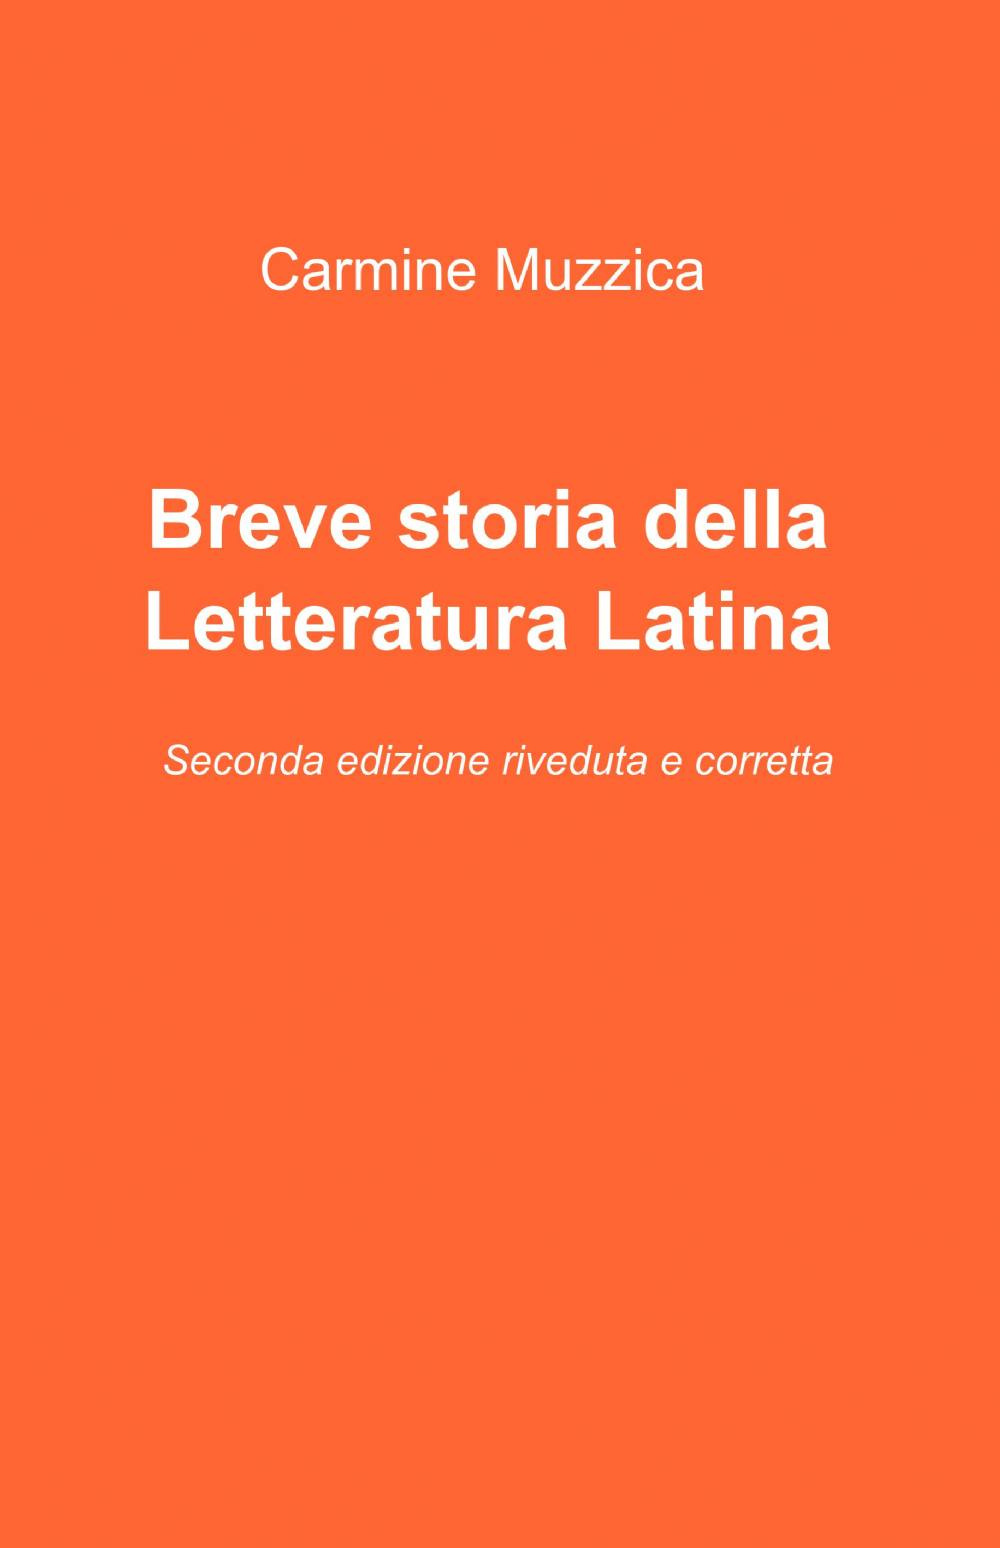 Image of Breve storia della letteratura latina